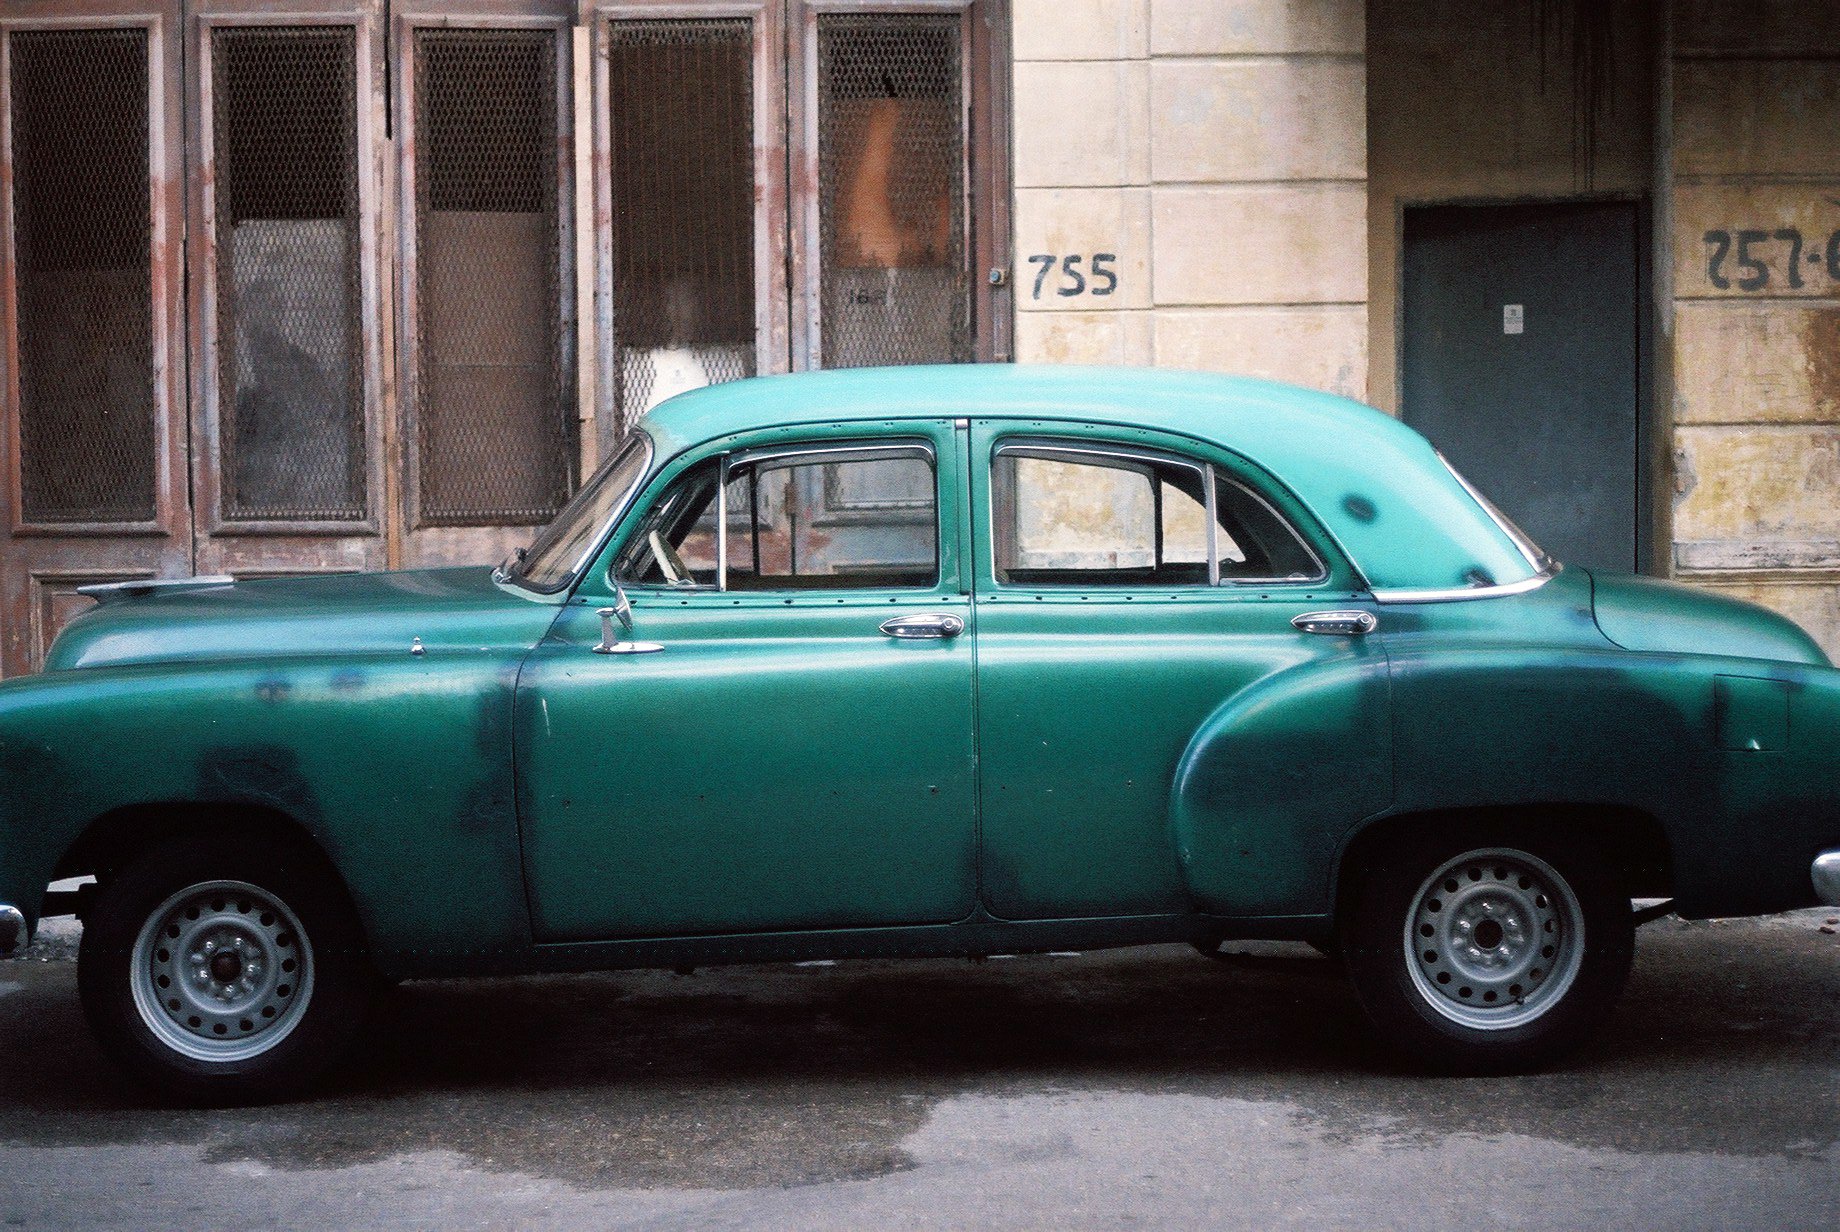  Green Ford in Havana - Cuba 